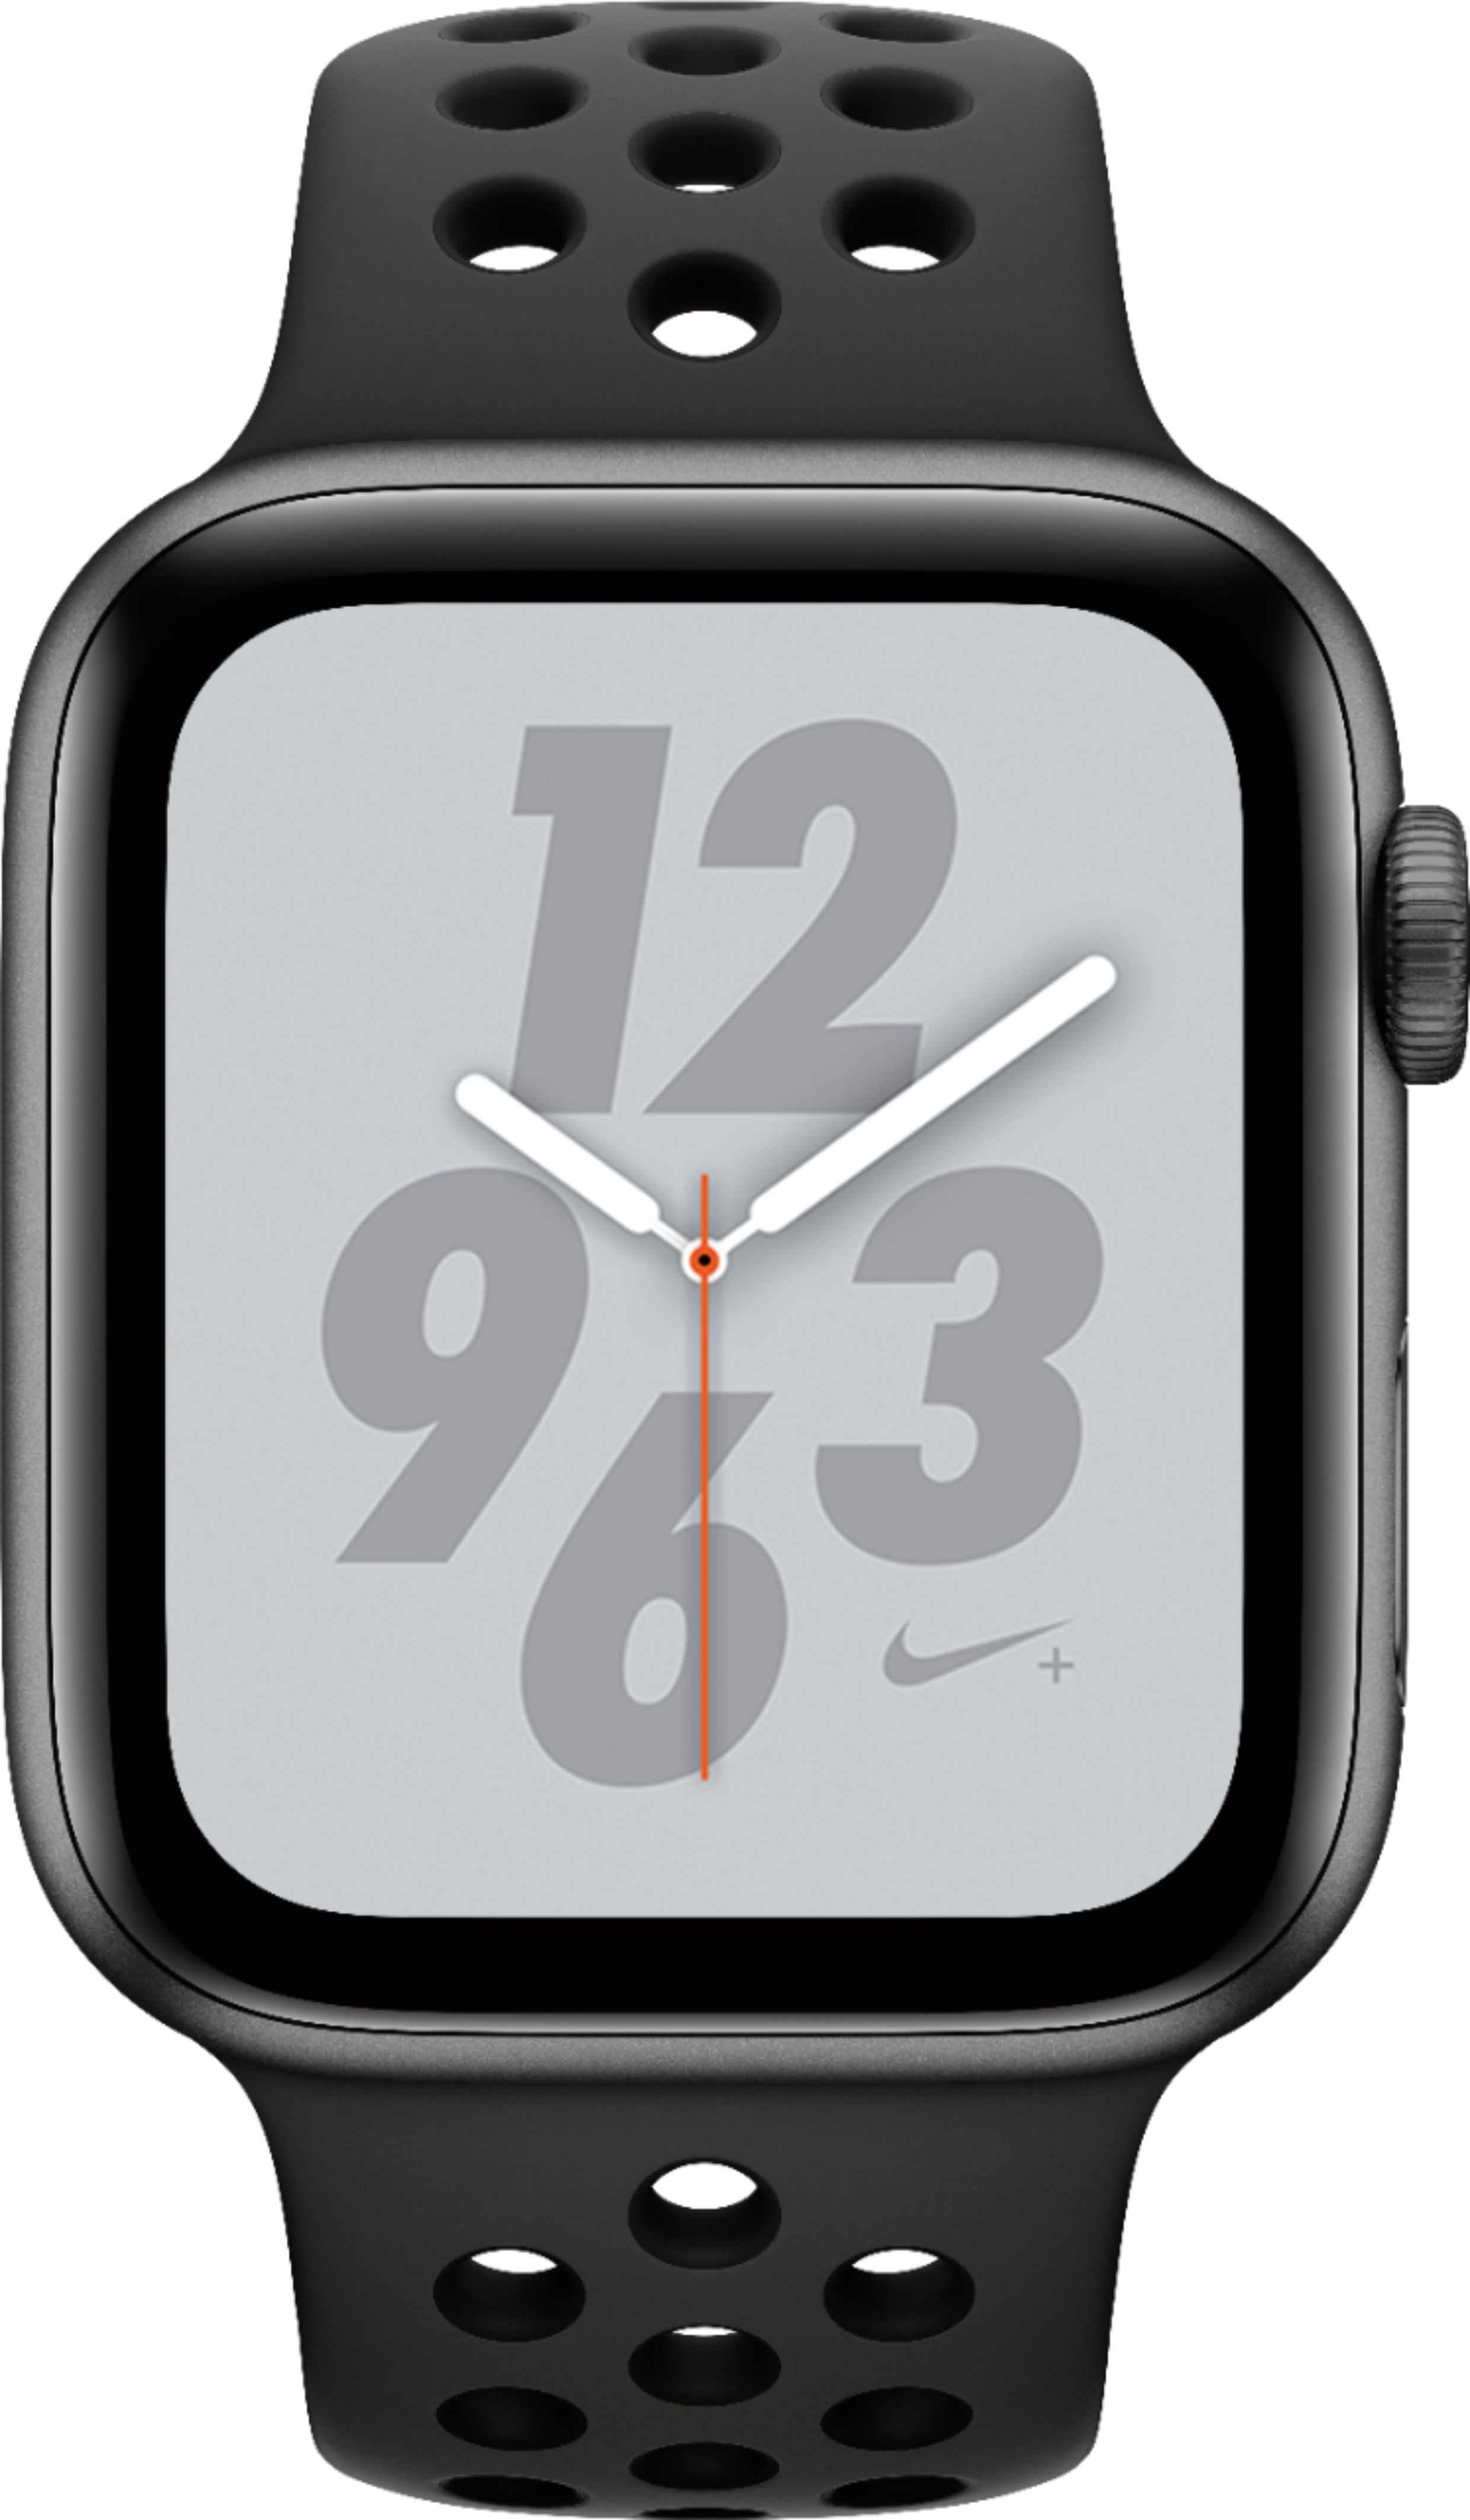 スマートフォン/携帯電話 その他 Best Buy: Apple Watch Nike+ Series 4 (GPS + Cellular) 44mm Aluminum Case  with Anthracite/Black Nike Sport Band Space Gray Aluminum MTXE2LL/A